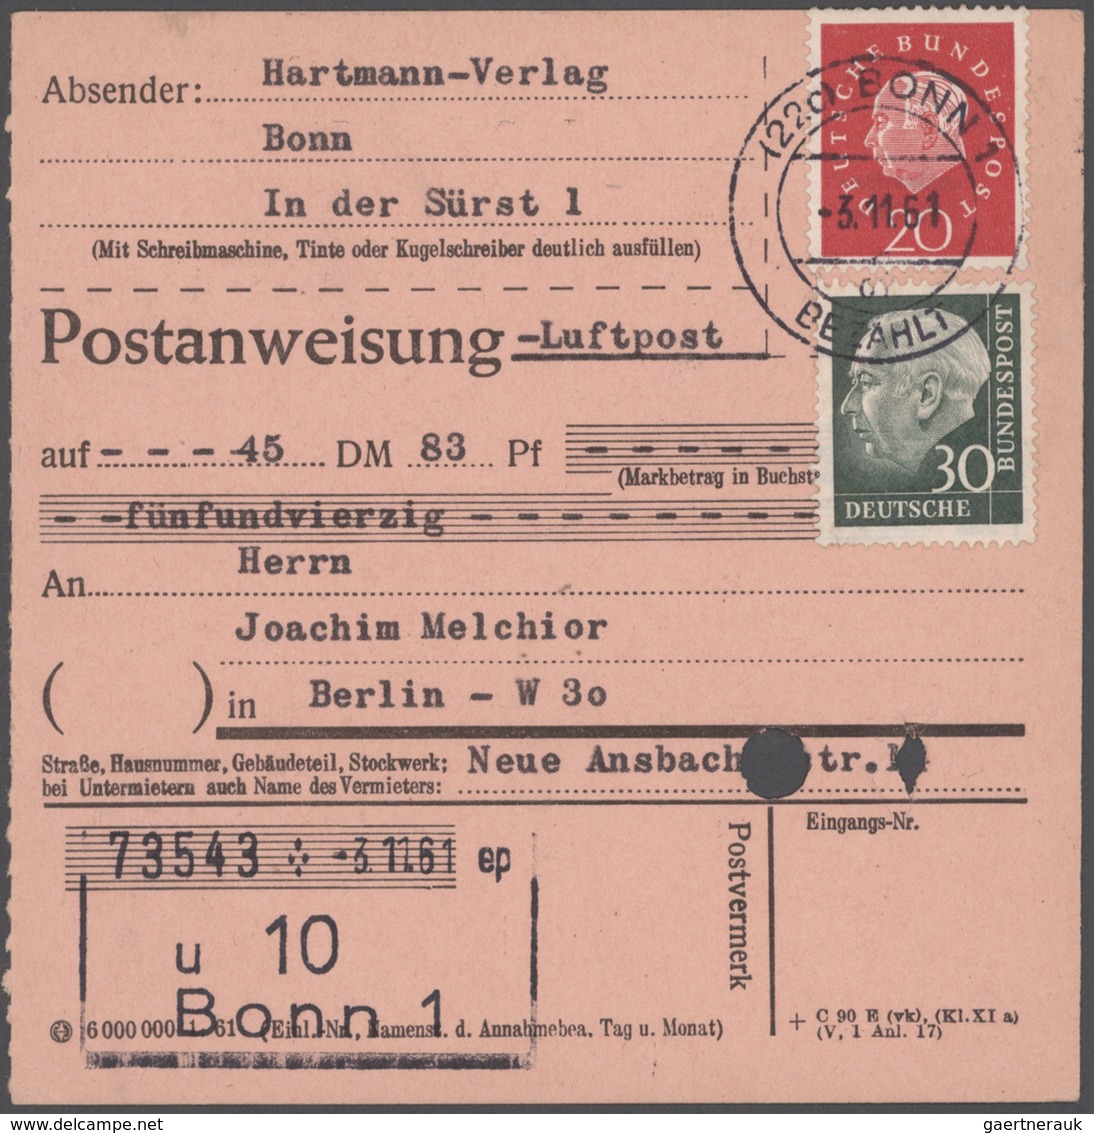 Bundesrepublik Deutschland: 1949/1989, wunderschöner Posten von 43 Einzel-, Mehrfach- und Mischfrank